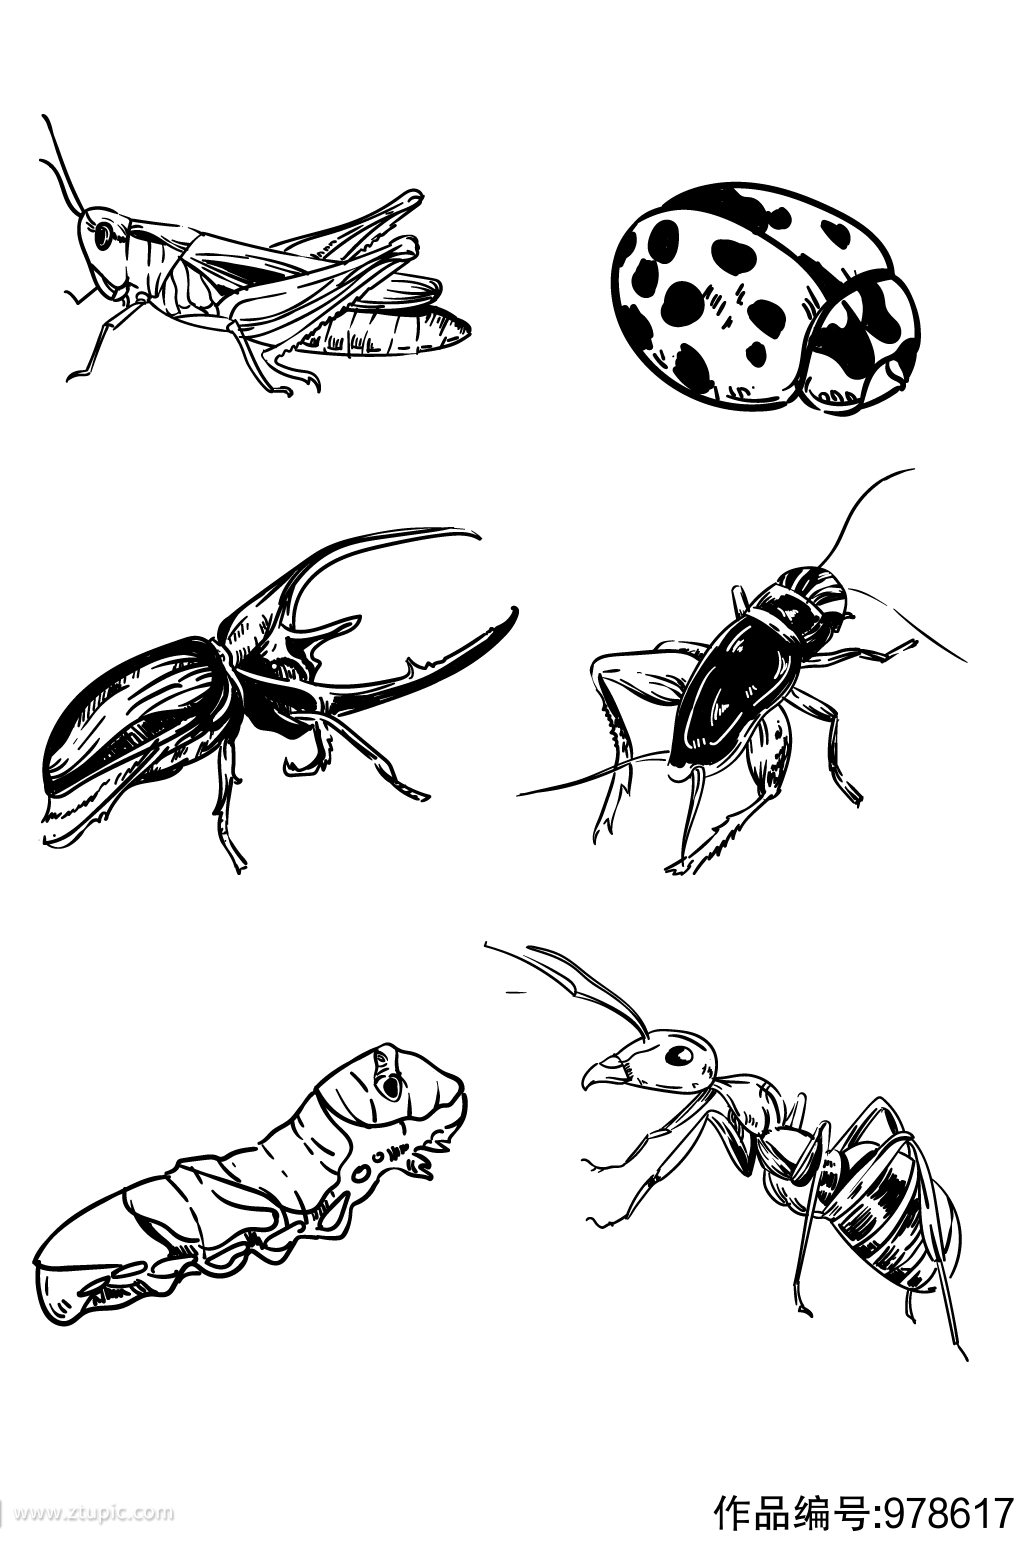 虫子写实手绘线描昆虫图片大全大图